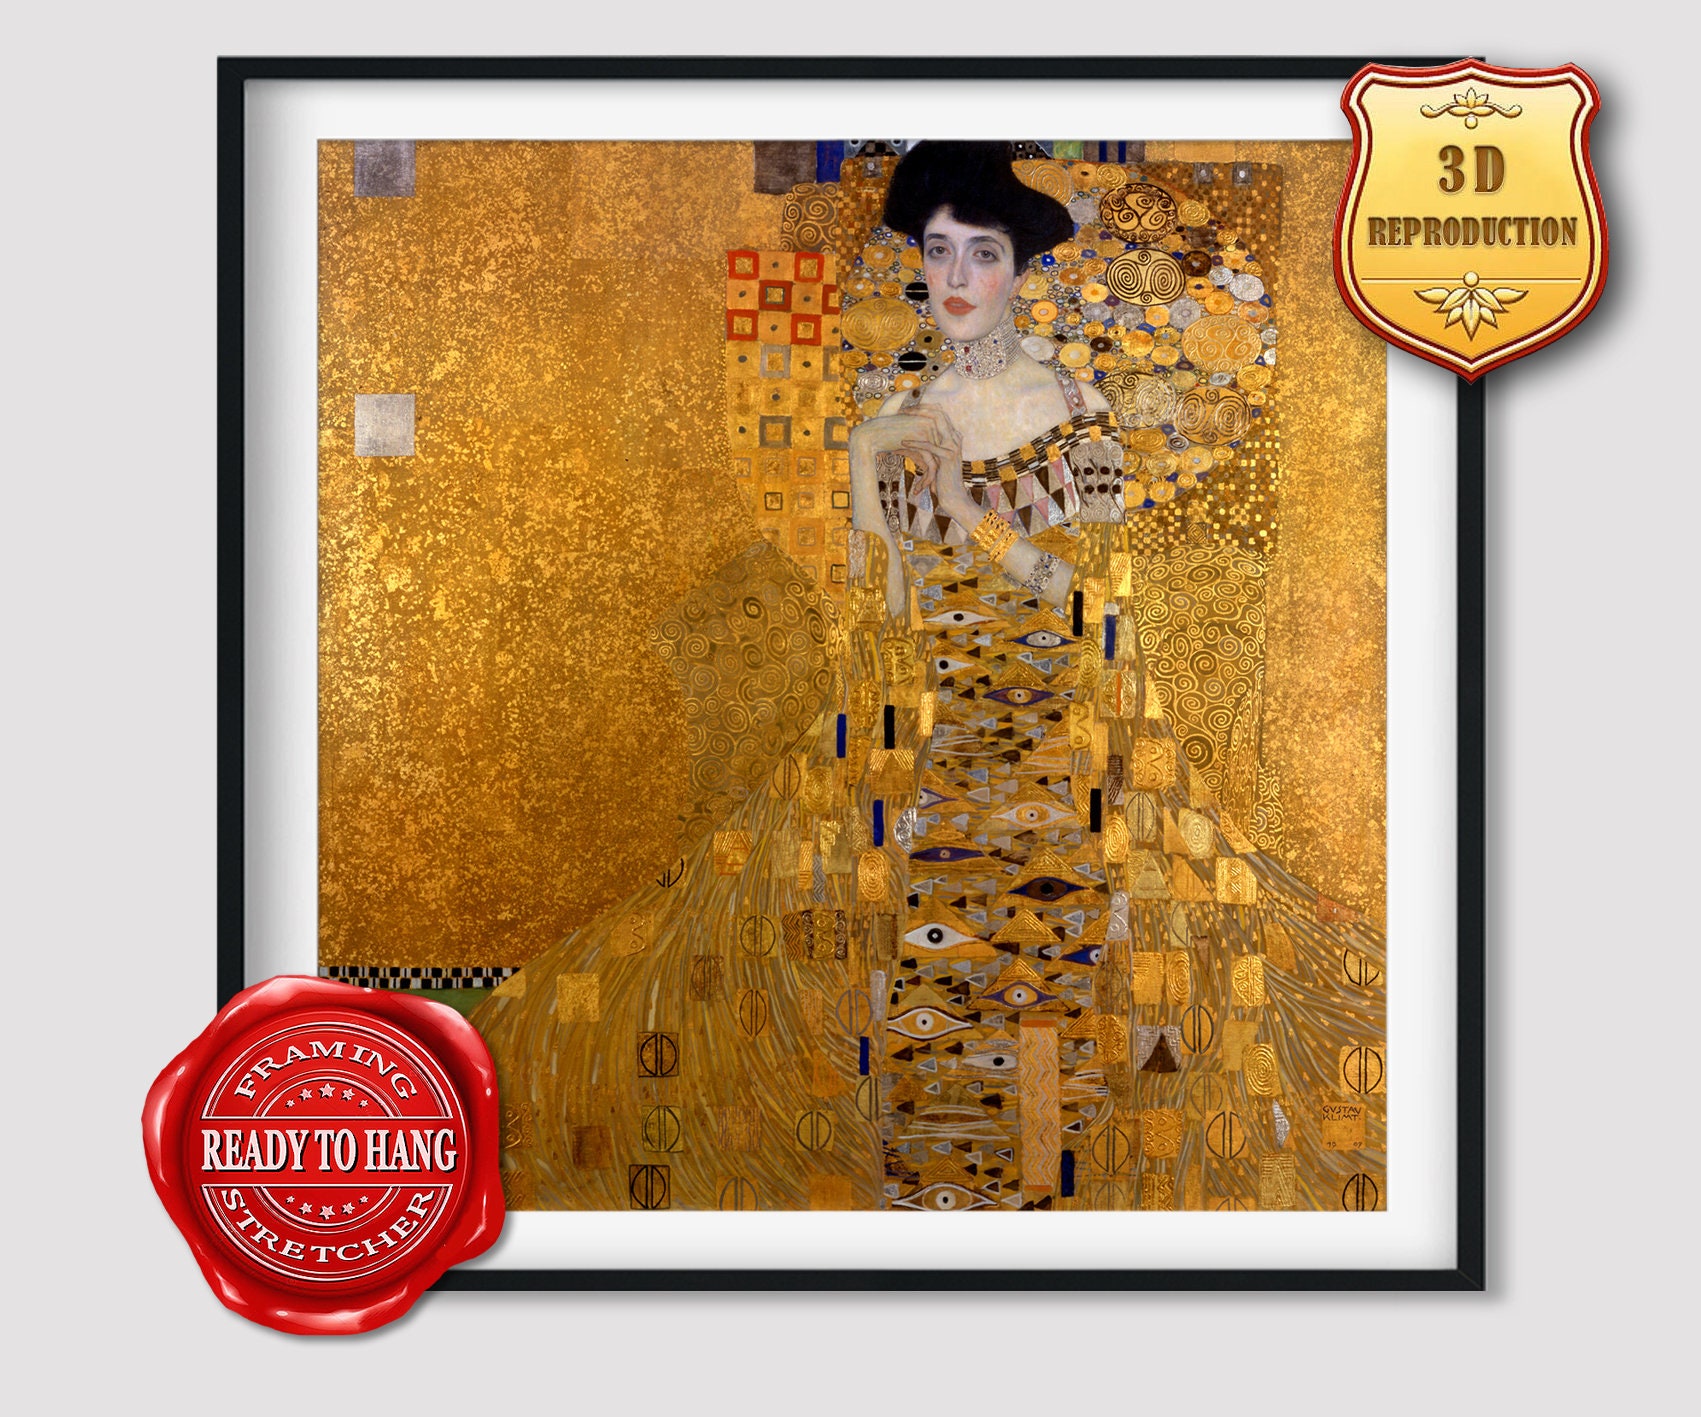 Gustav Klimt Canvas Emilie Adele and Other Golden Women -  Denmark